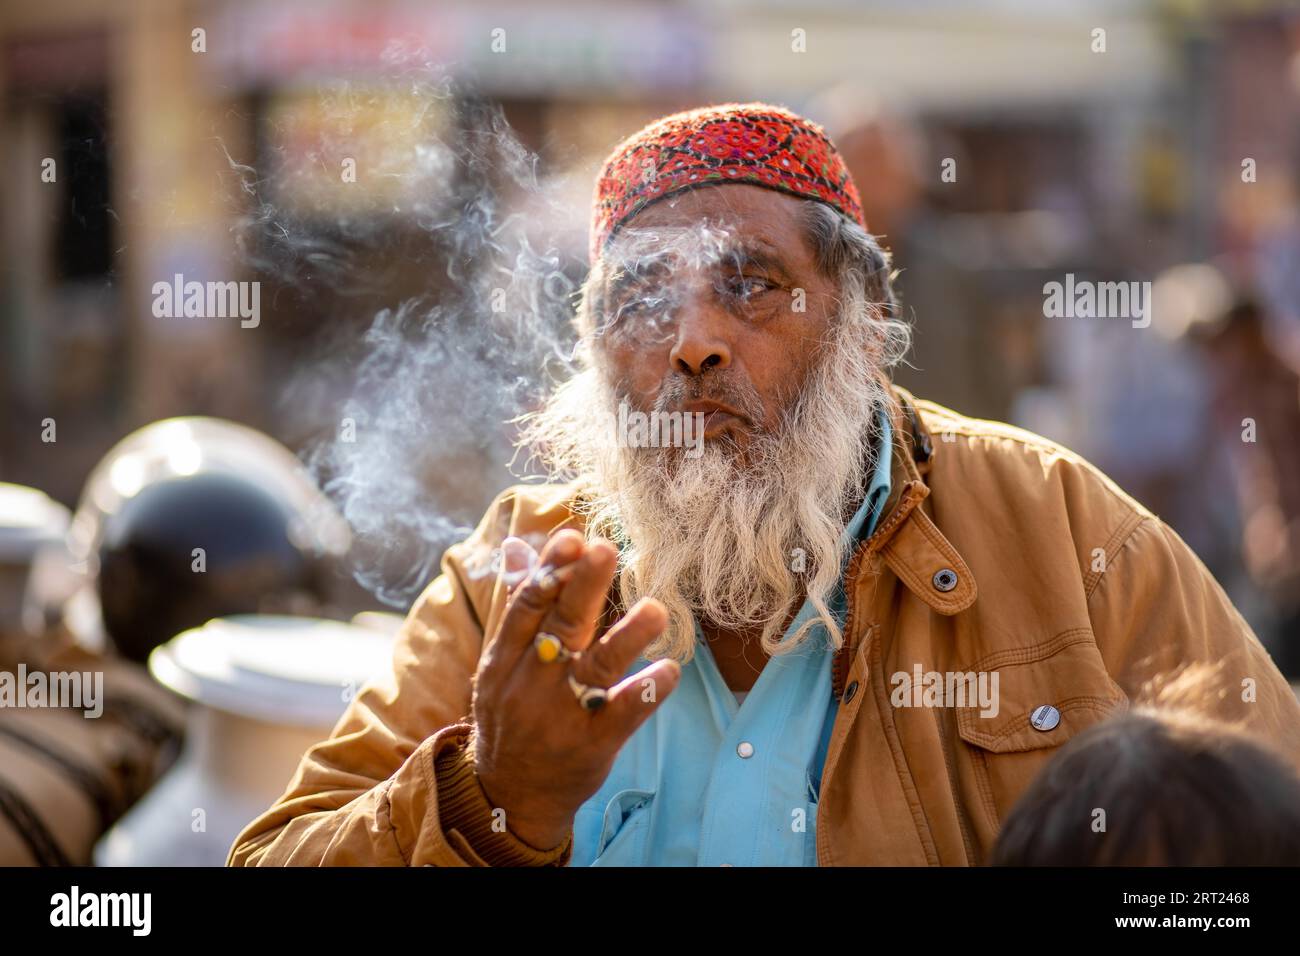 Jaisalmer, Inde, 7 décembre 2019 : Portrait d'un homme âgé du Rajasthani soufflant de la fumée de cigarette Banque D'Images